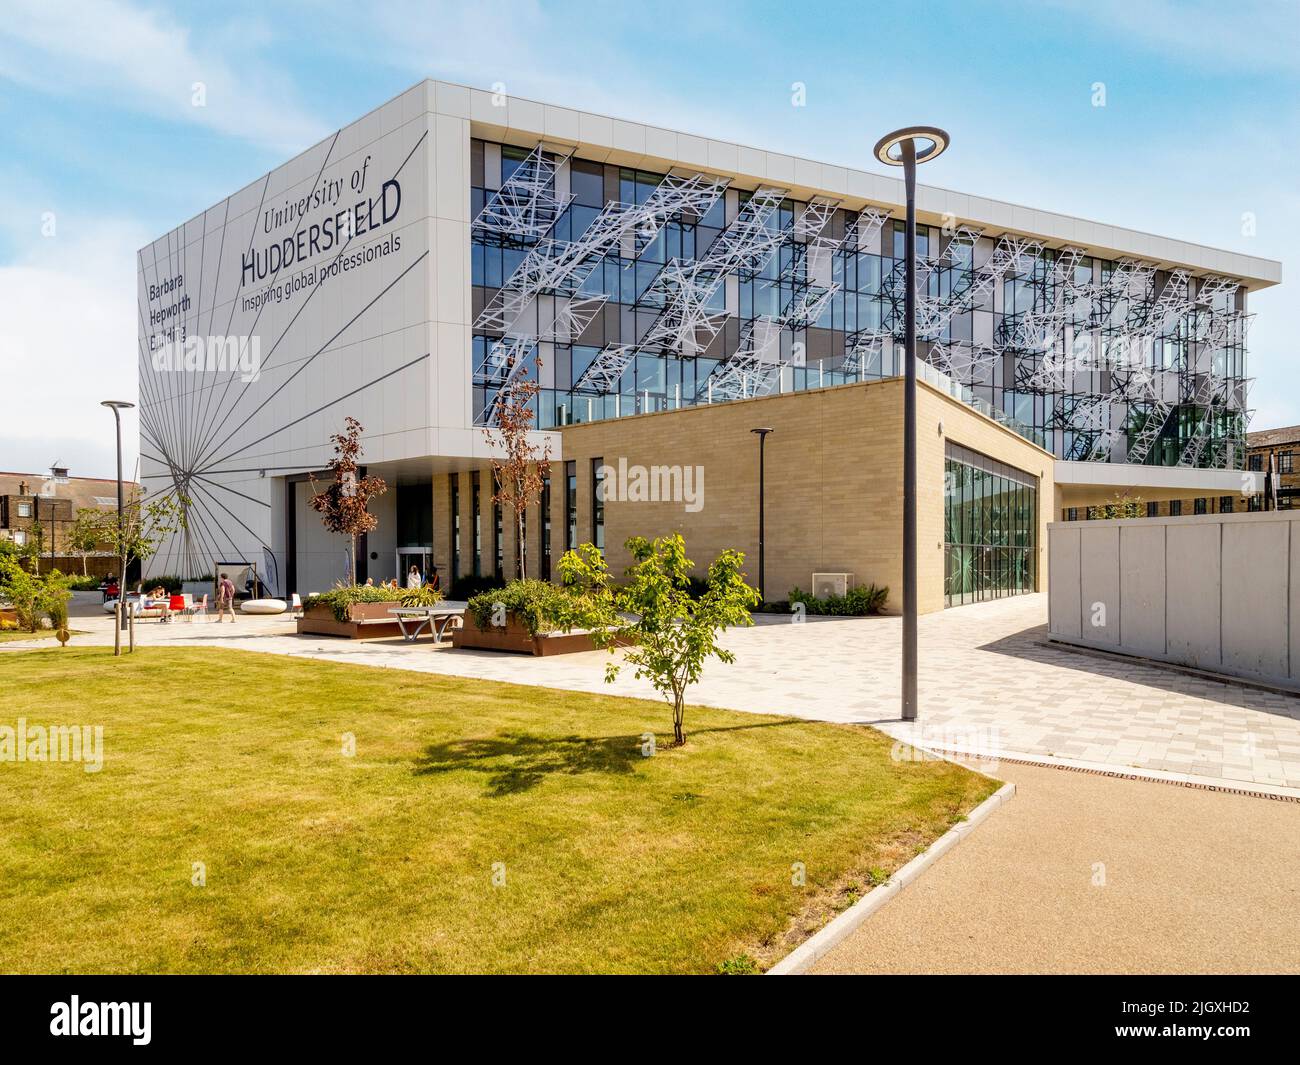 Façade extérieure du bâtiment Barbara Hepworth, nouvelle école d'art, de design et d'architecture. Université Huddersfield. ROYAUME-UNI Banque D'Images